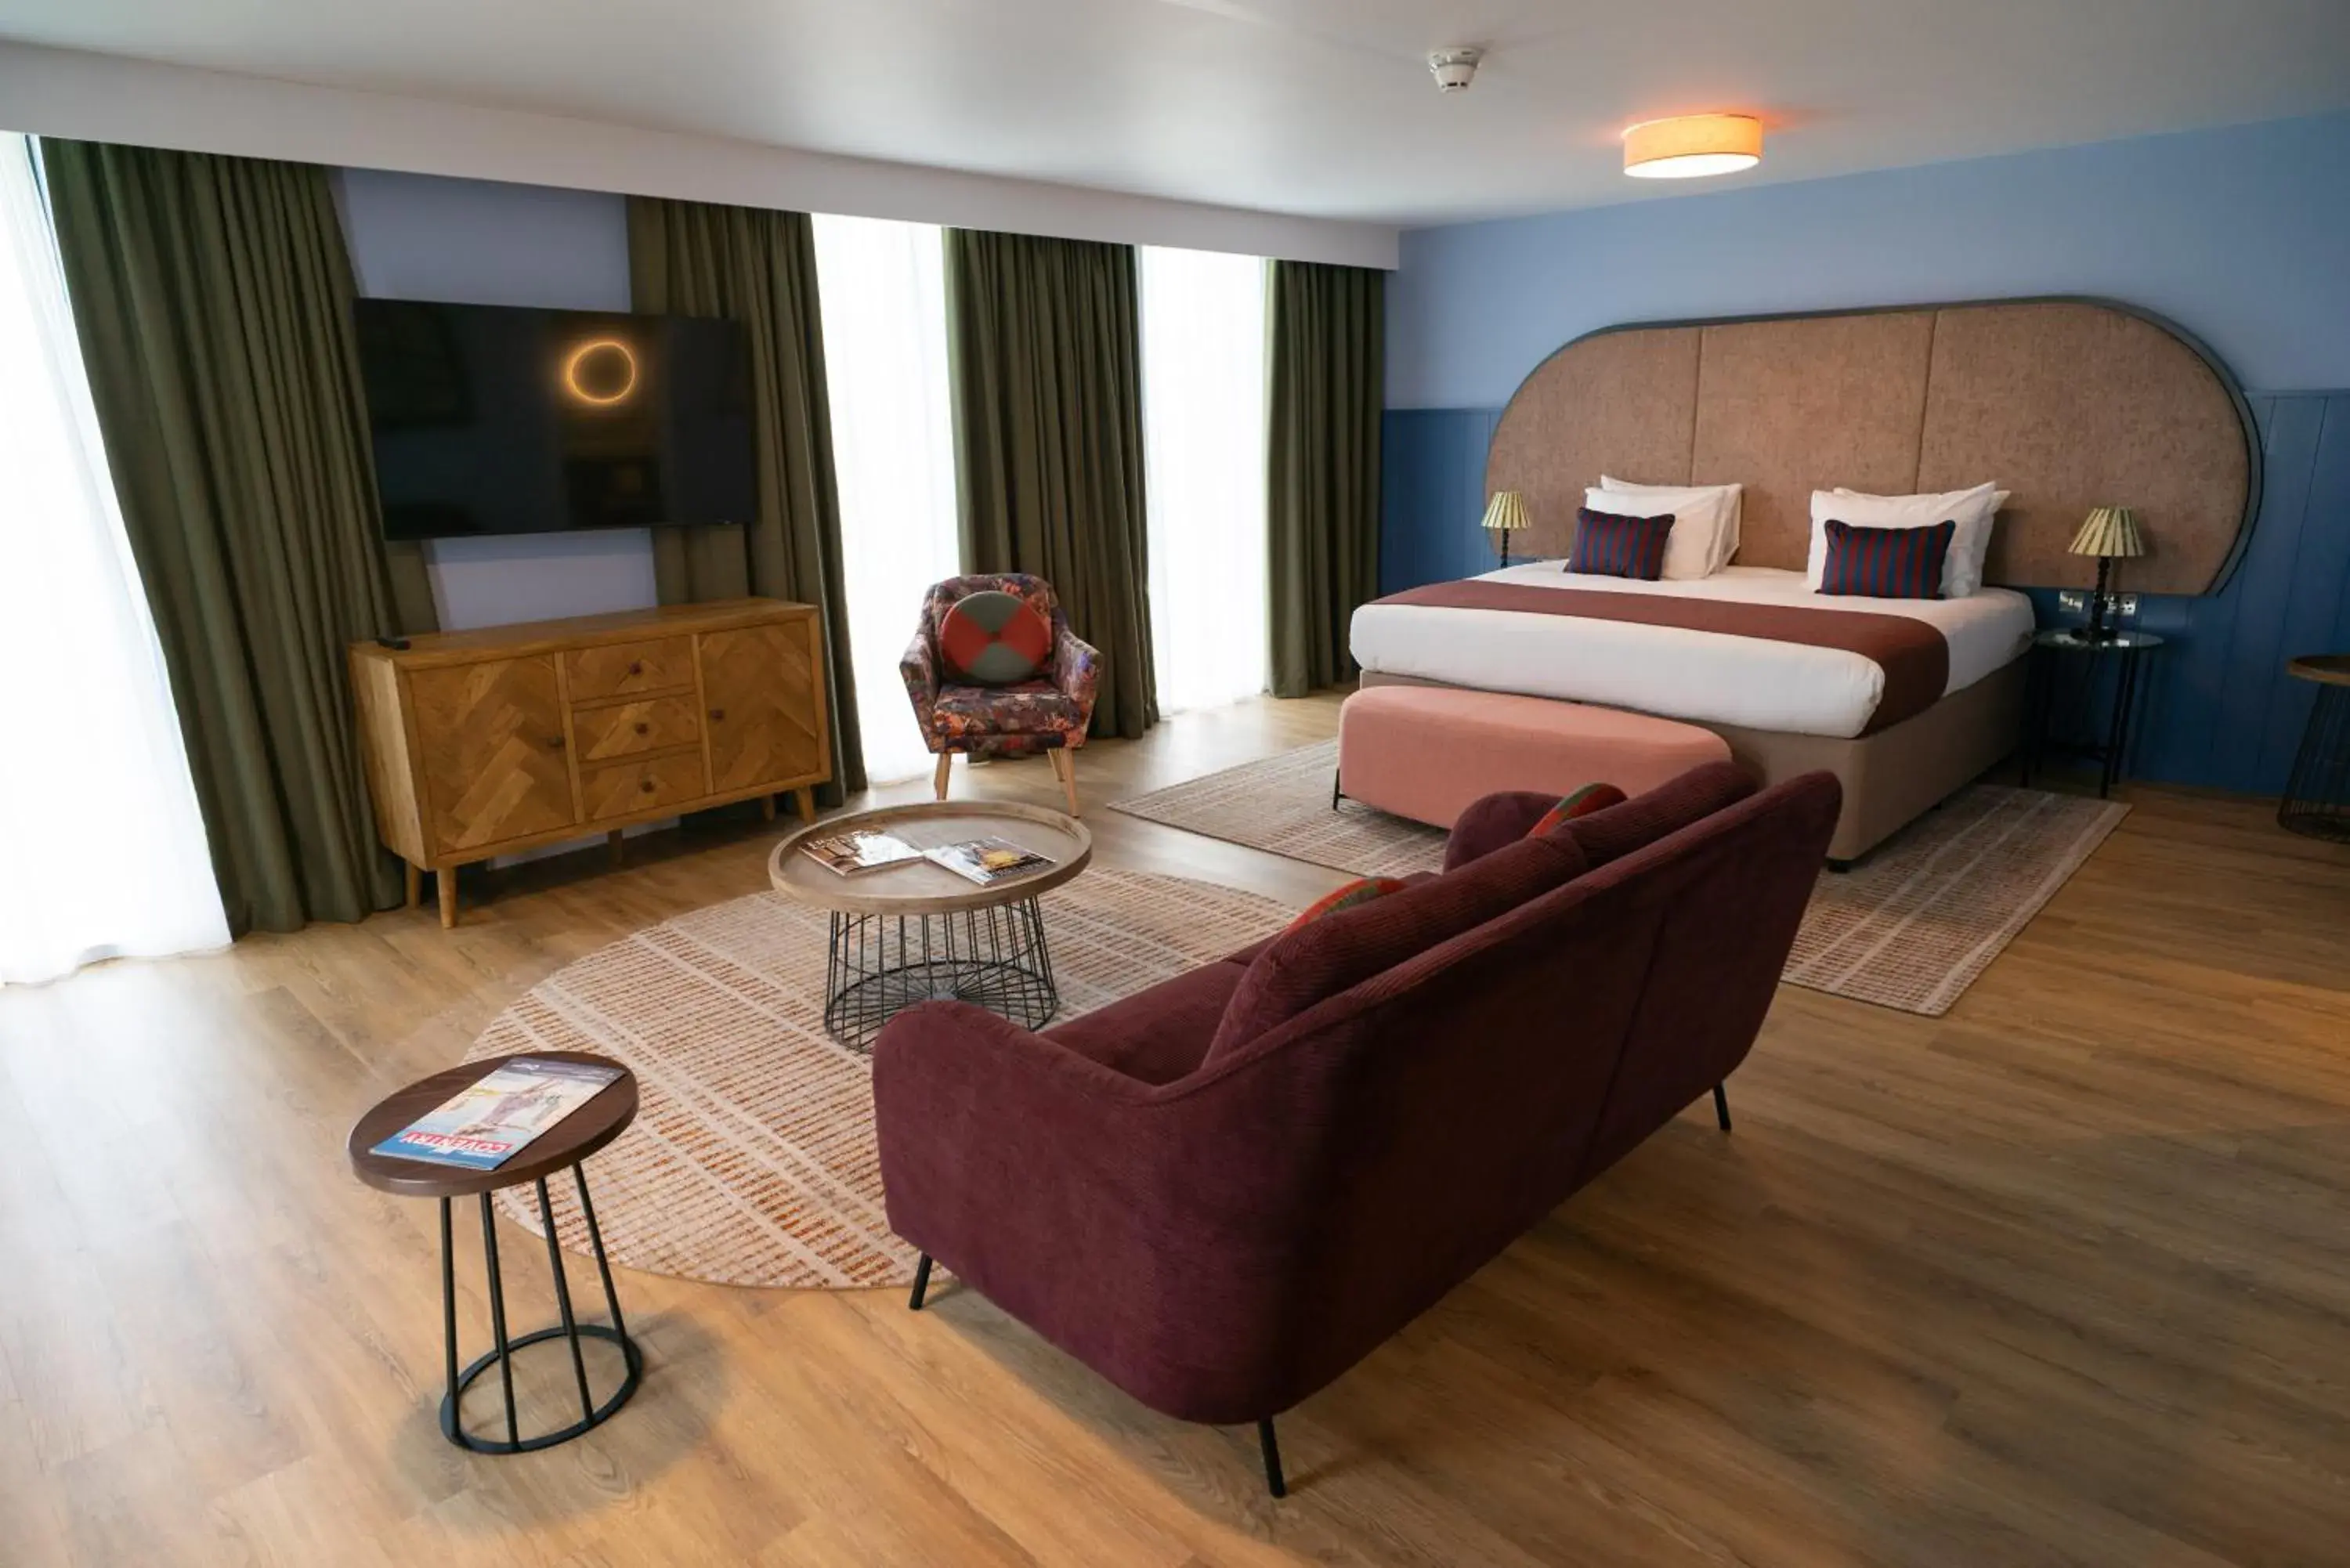 Bedroom in Hotel Indigo Coventry